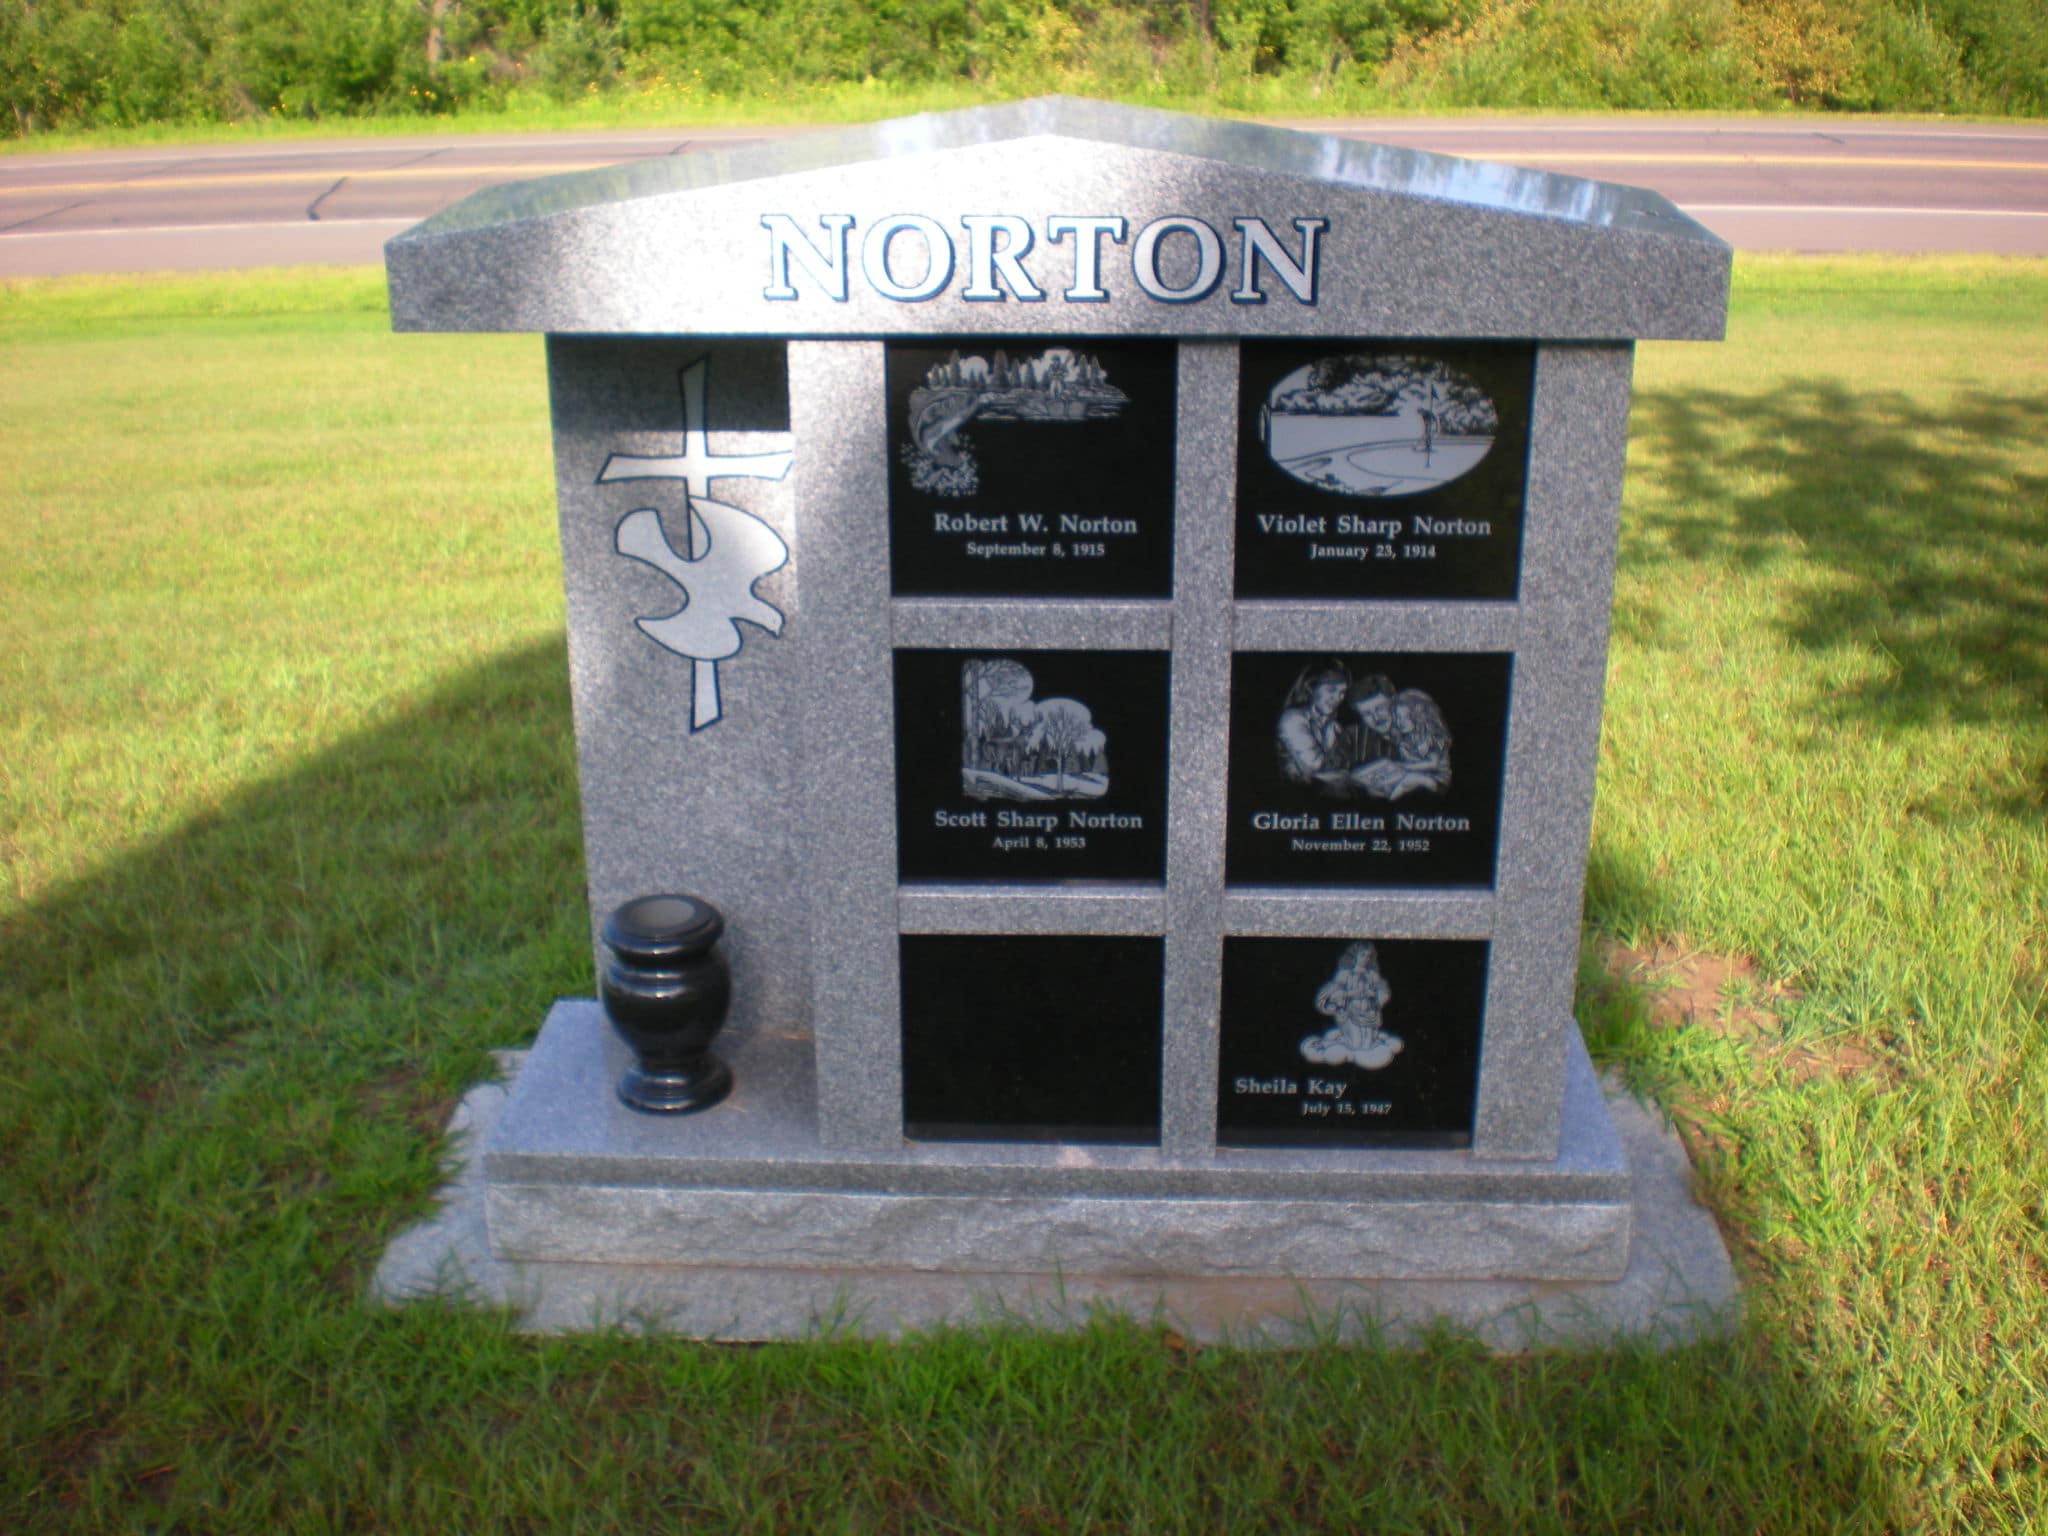 Cremation Memorial